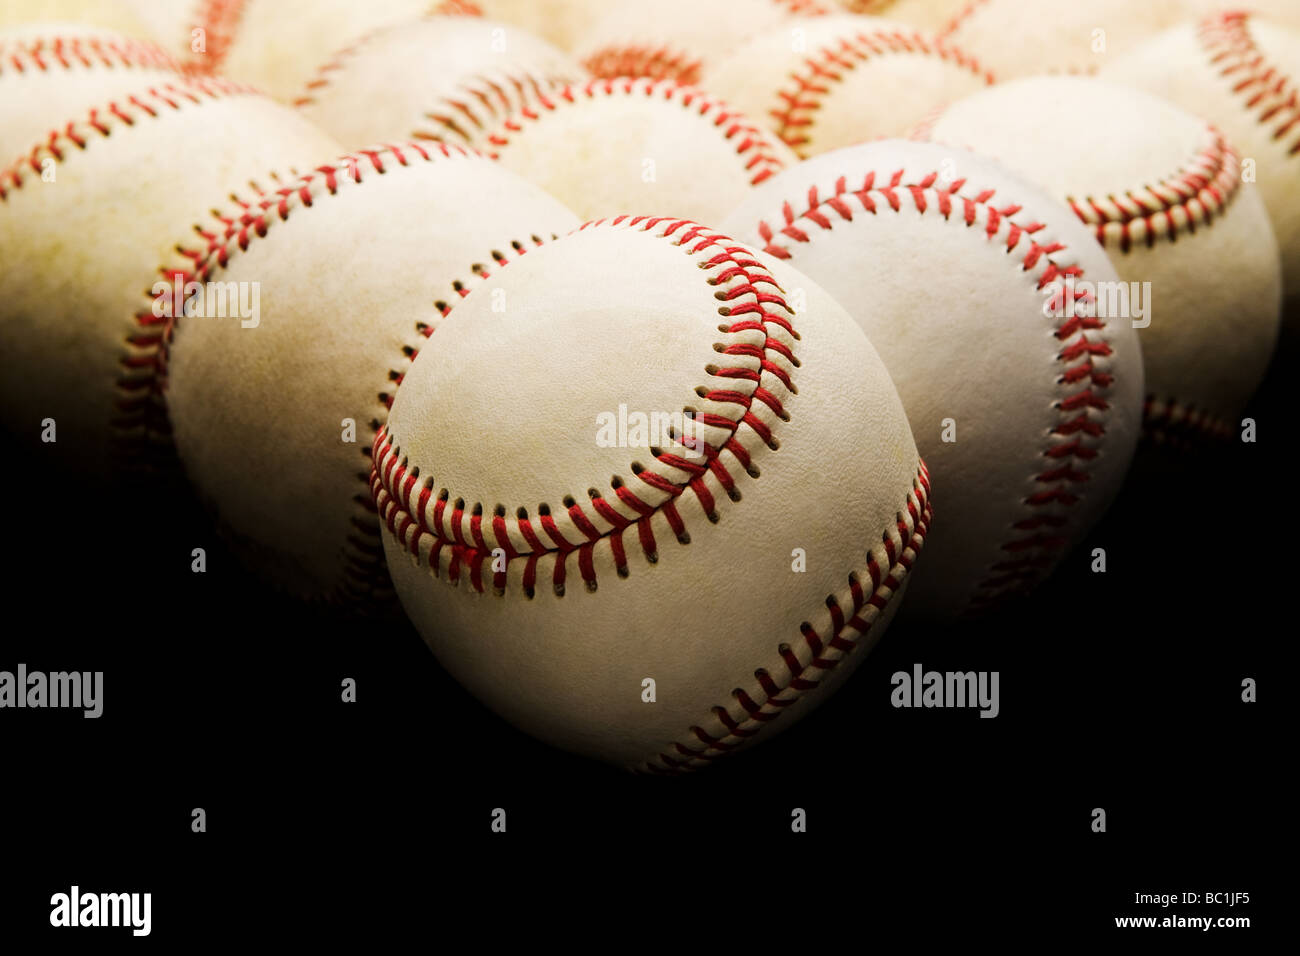 Vorderansicht der Gruppe von gebrauchte abgenutzte Baseballs im Dreieck Anordnung Overhead Beleuchtung und selektive Focue Vordergrund angehoben Stockfoto